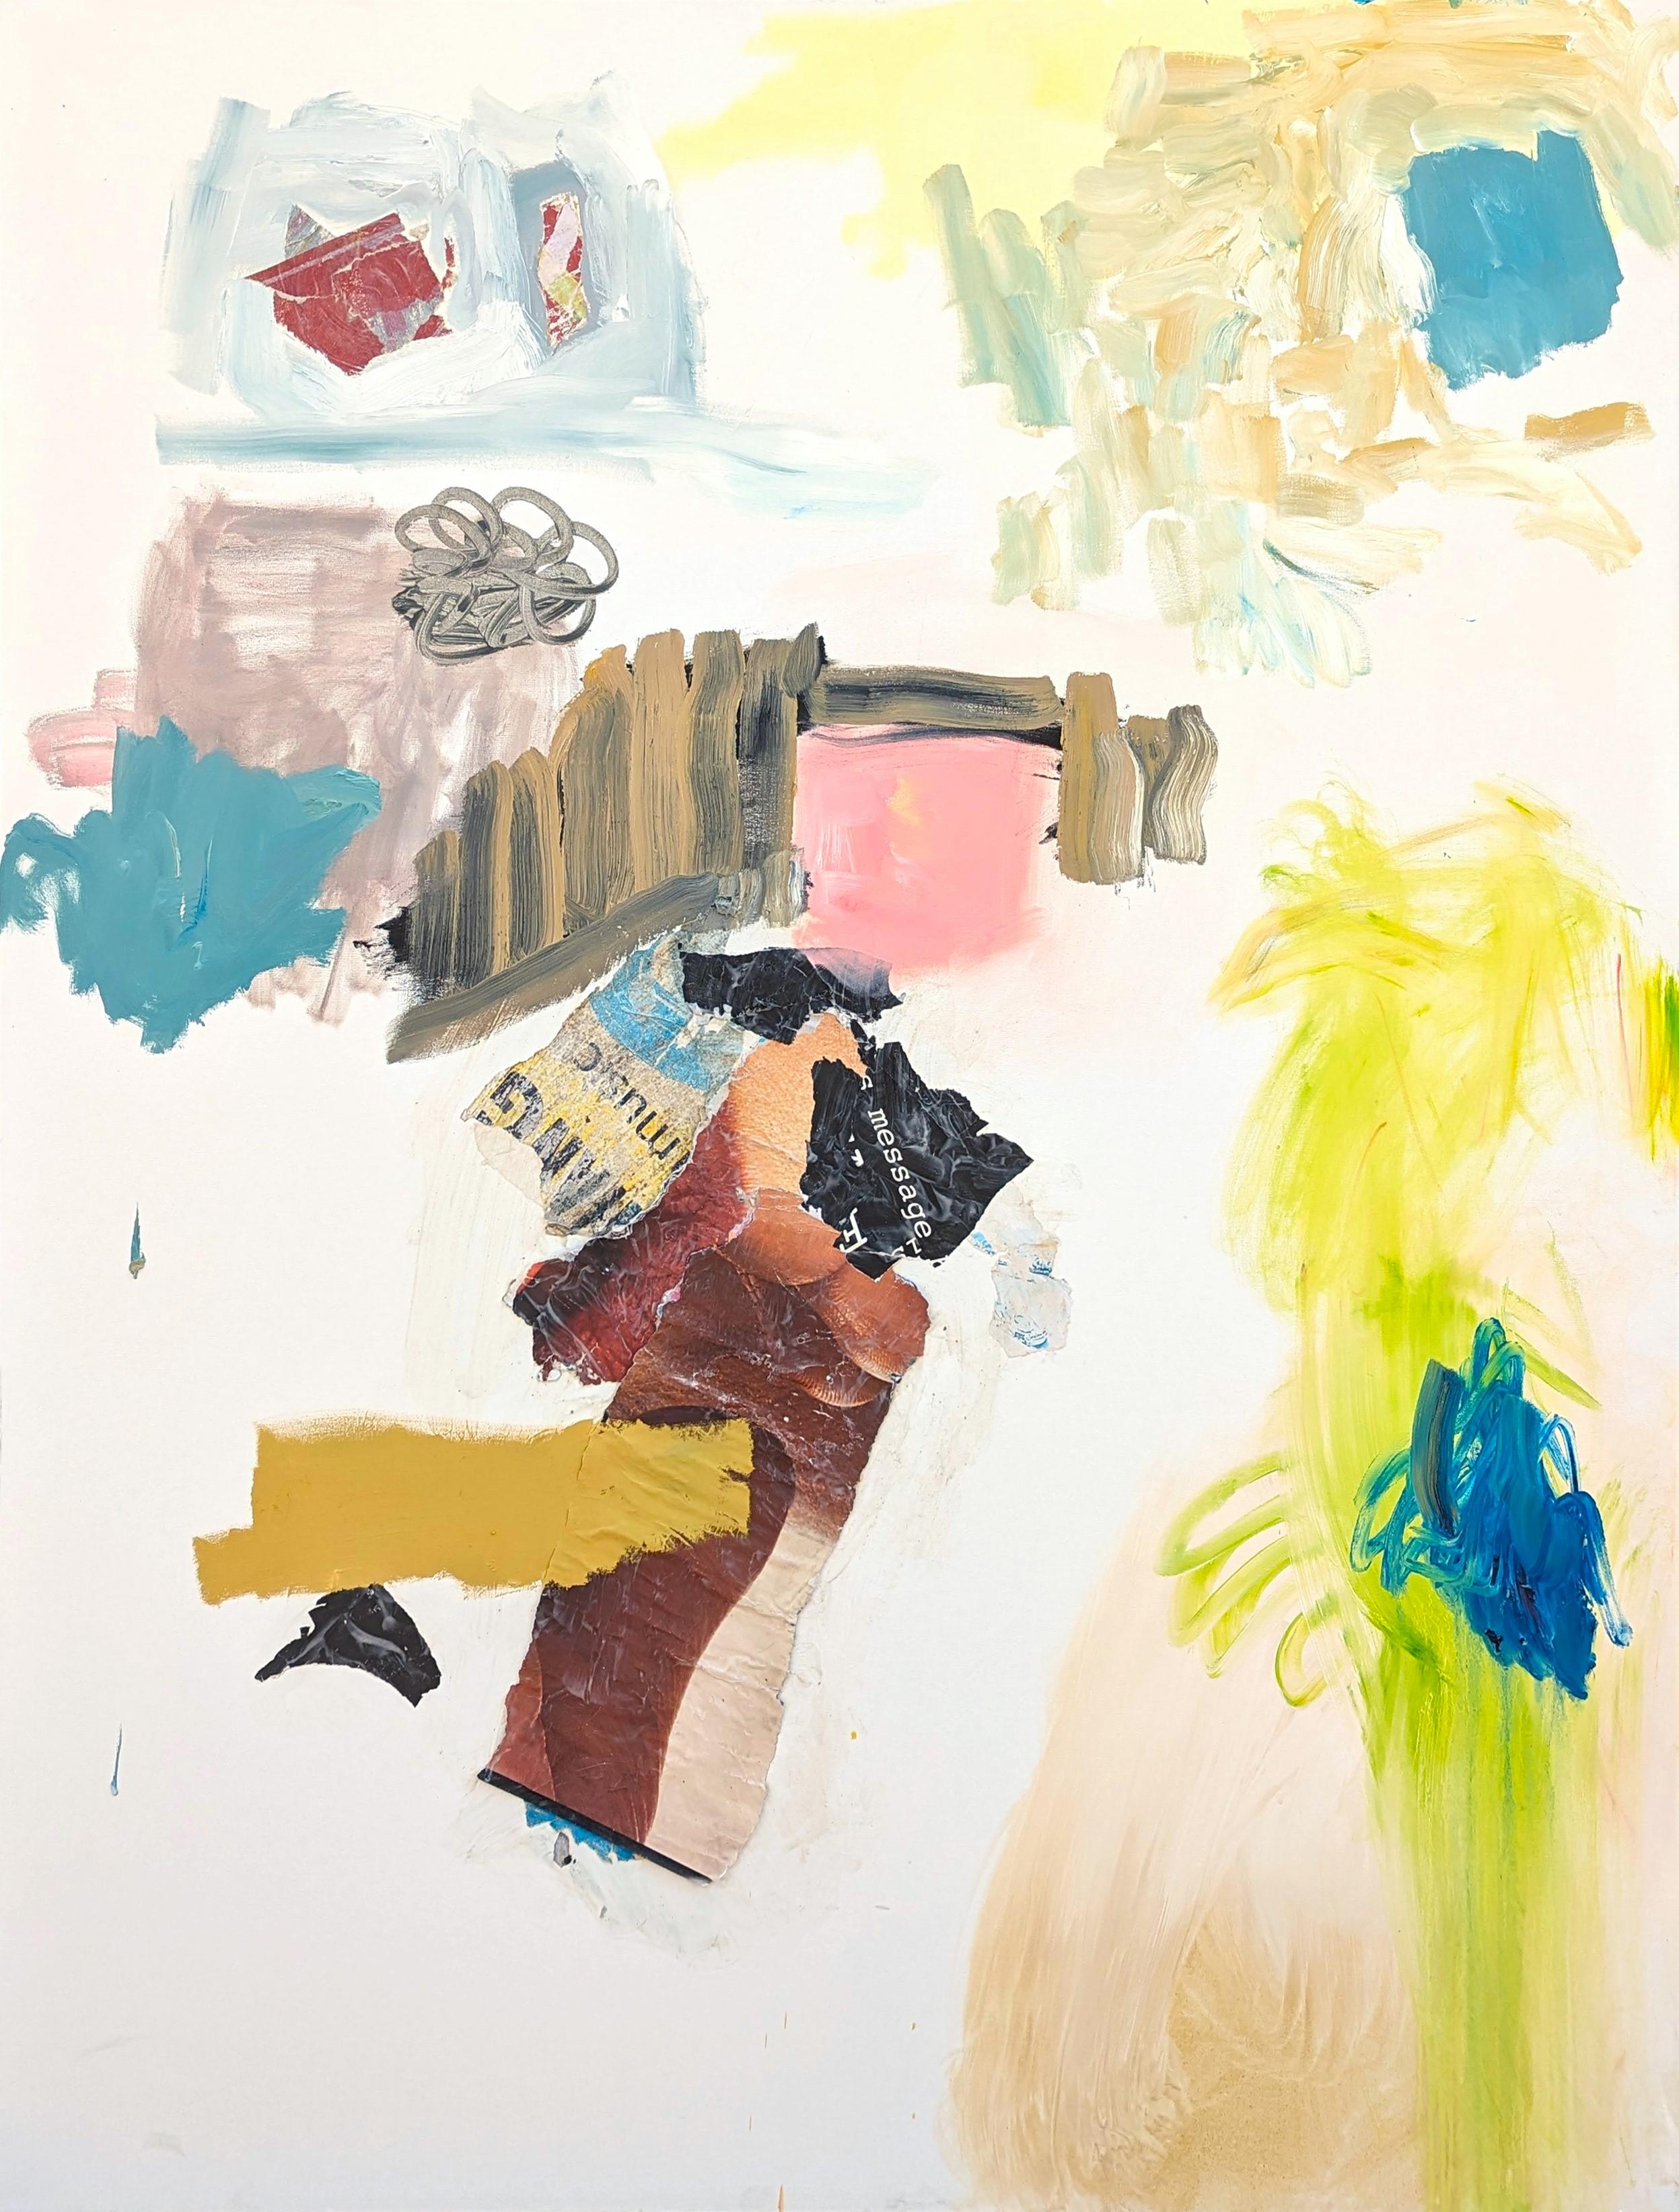 "Tag 1" Peinture à l'huile contemporaine au pastel, expressionnisme abstrait - Mixed Media Art de Benji Stiles